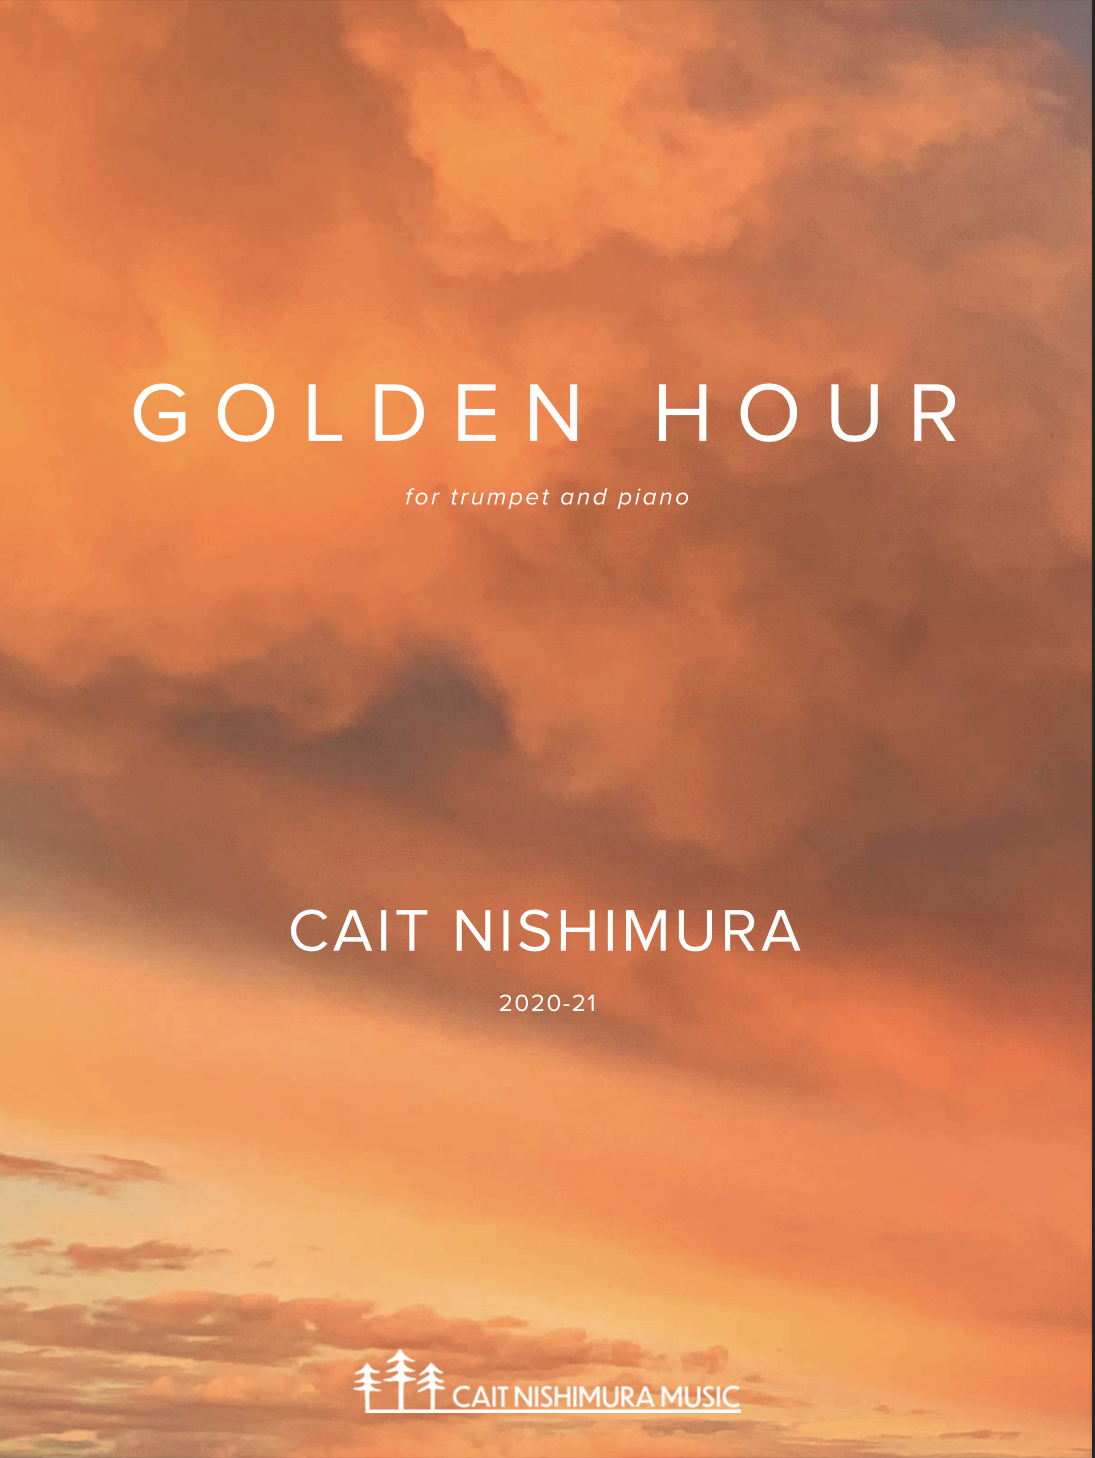 Golden Hour (Trumpet Version) by Cait Nishimura